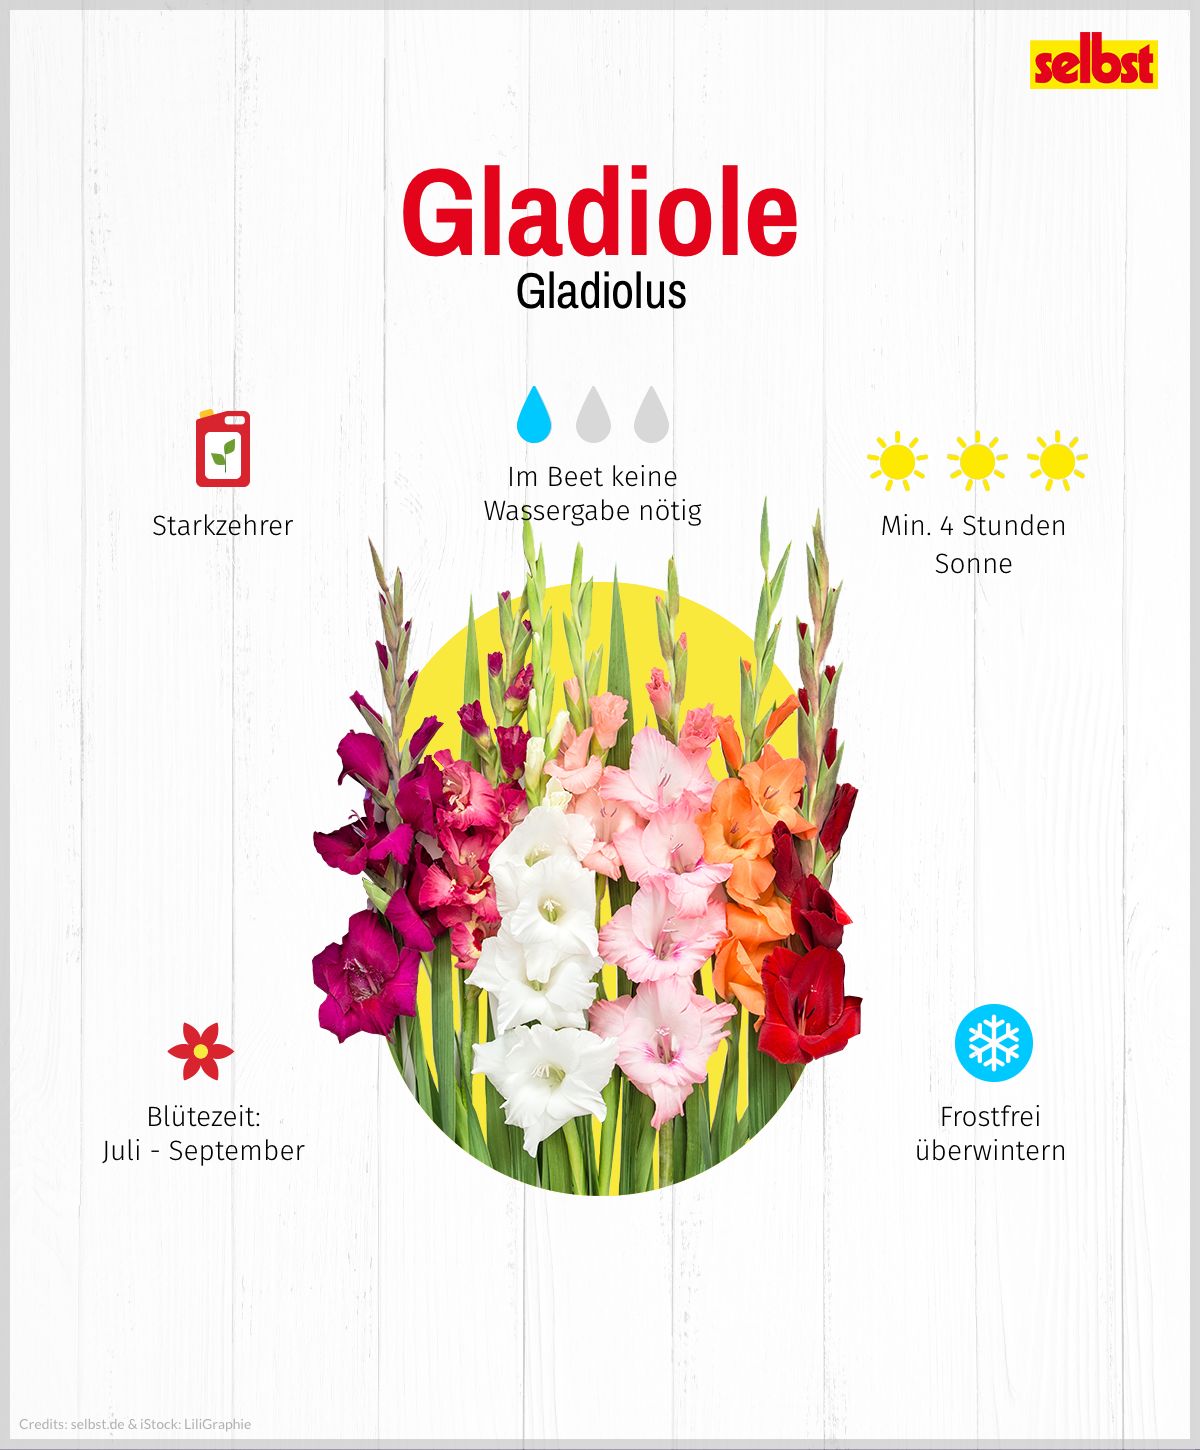 Gladiole mit den wichtigsten Eigenschaften: Mindestens 4 Stunden Sonne, Starkzehrer, Juli-September Blütezeit